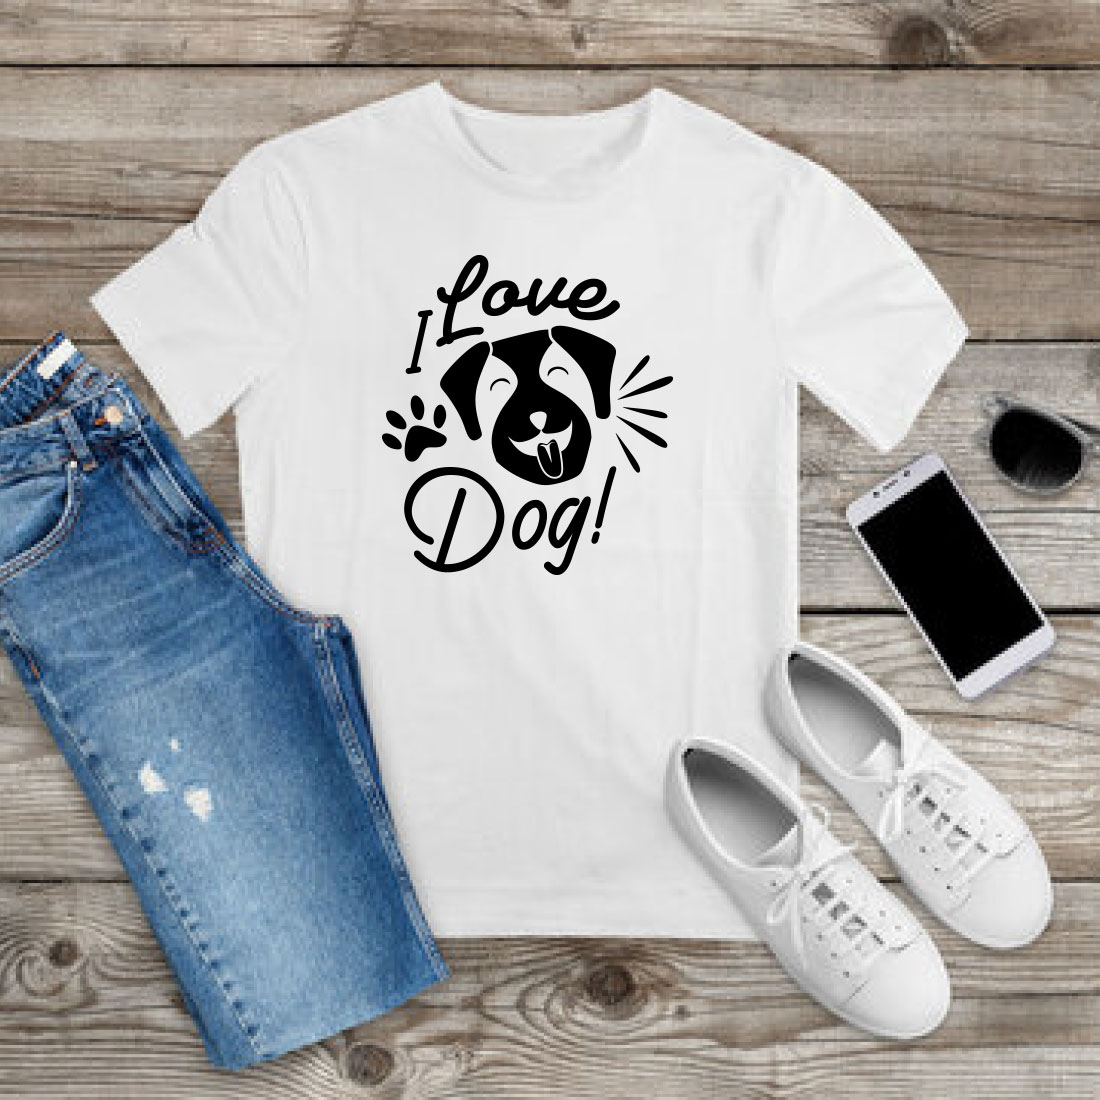 Dog SVG T-shirt Design Bundle Vol-21 preview image.